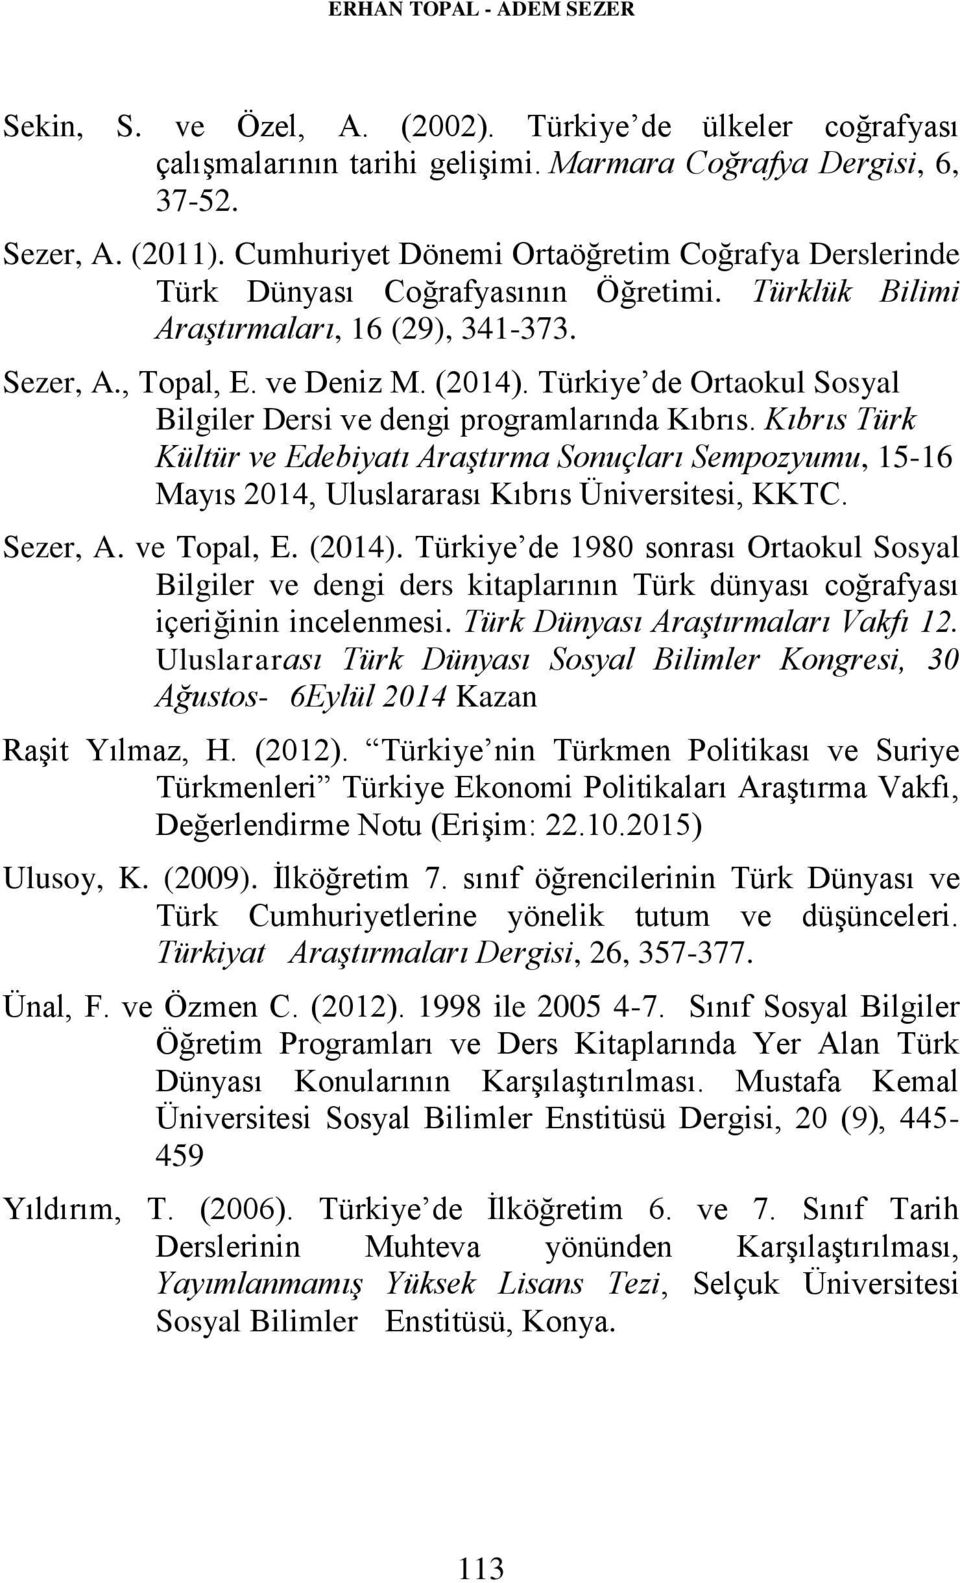 Türkiye de Ortaokul Sosyal Bilgiler Dersi ve dengi programlarında Kıbrıs. Kıbrıs Türk Kültür ve Edebiyatı Araştırma Sonuçları Sempozyumu, 15-16 Mayıs 2014, Uluslararası Kıbrıs Üniversitesi, KKTC.